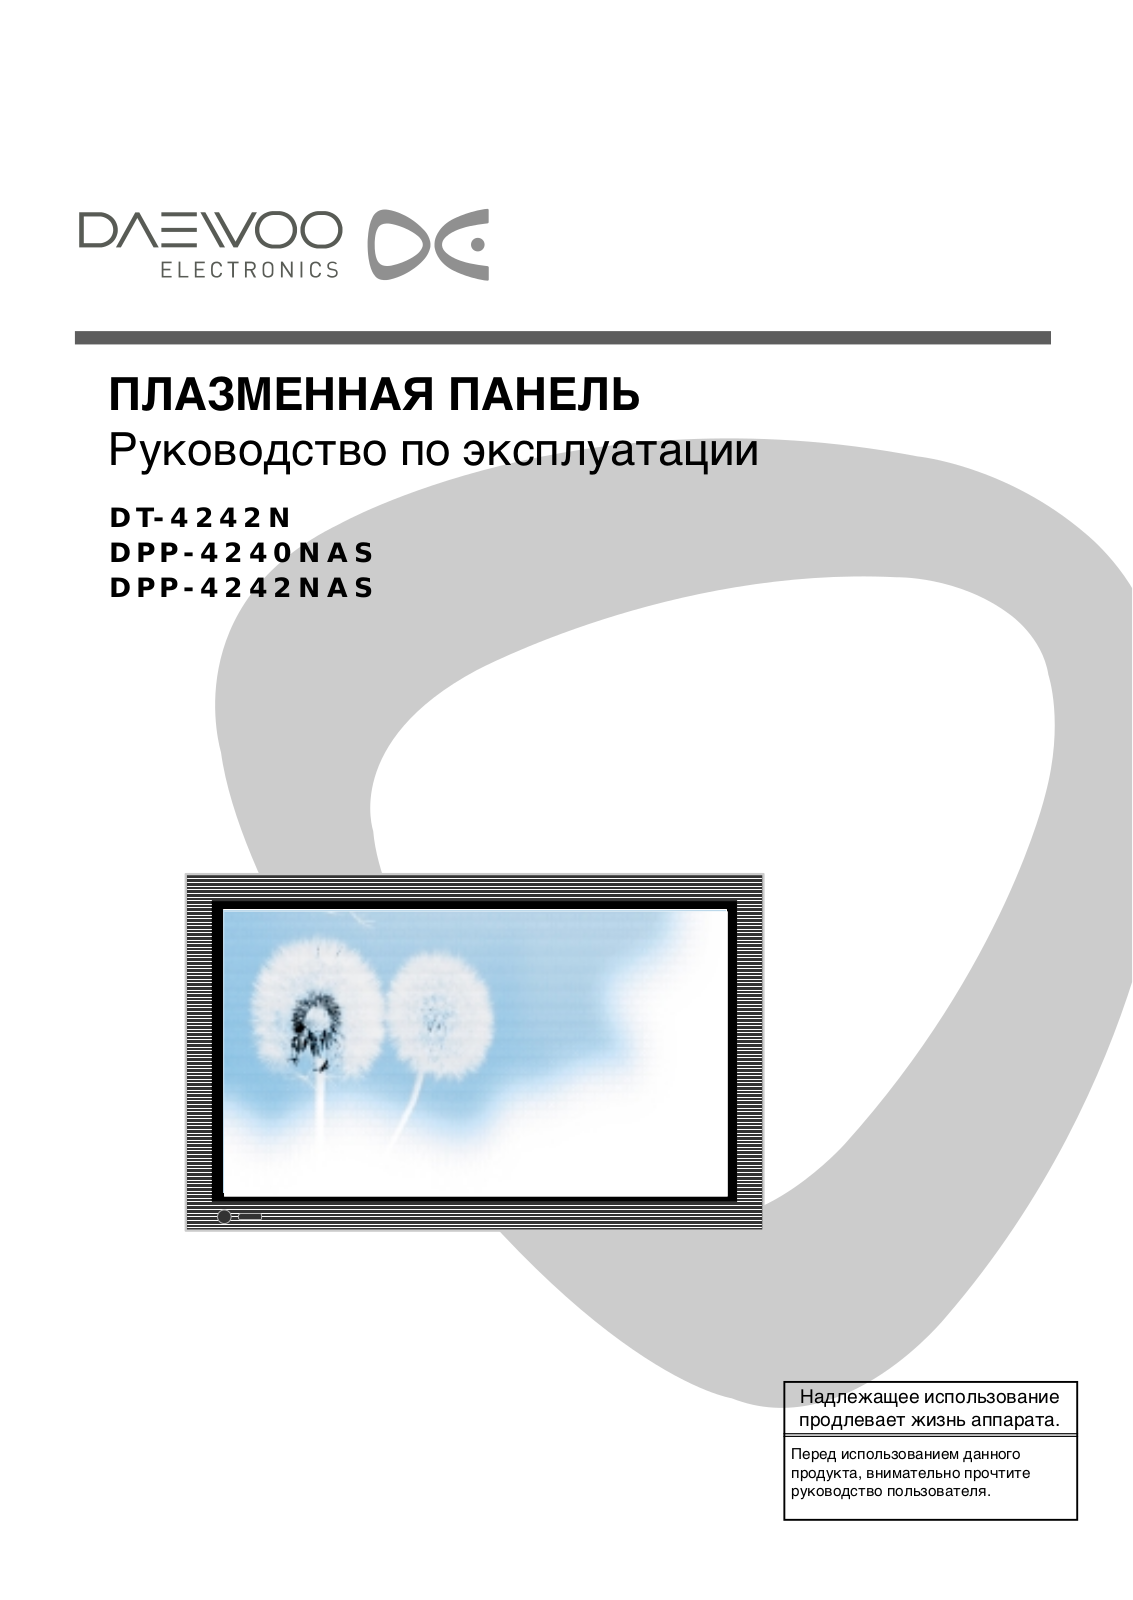 Daewoo DPP-4242NAS User Manual